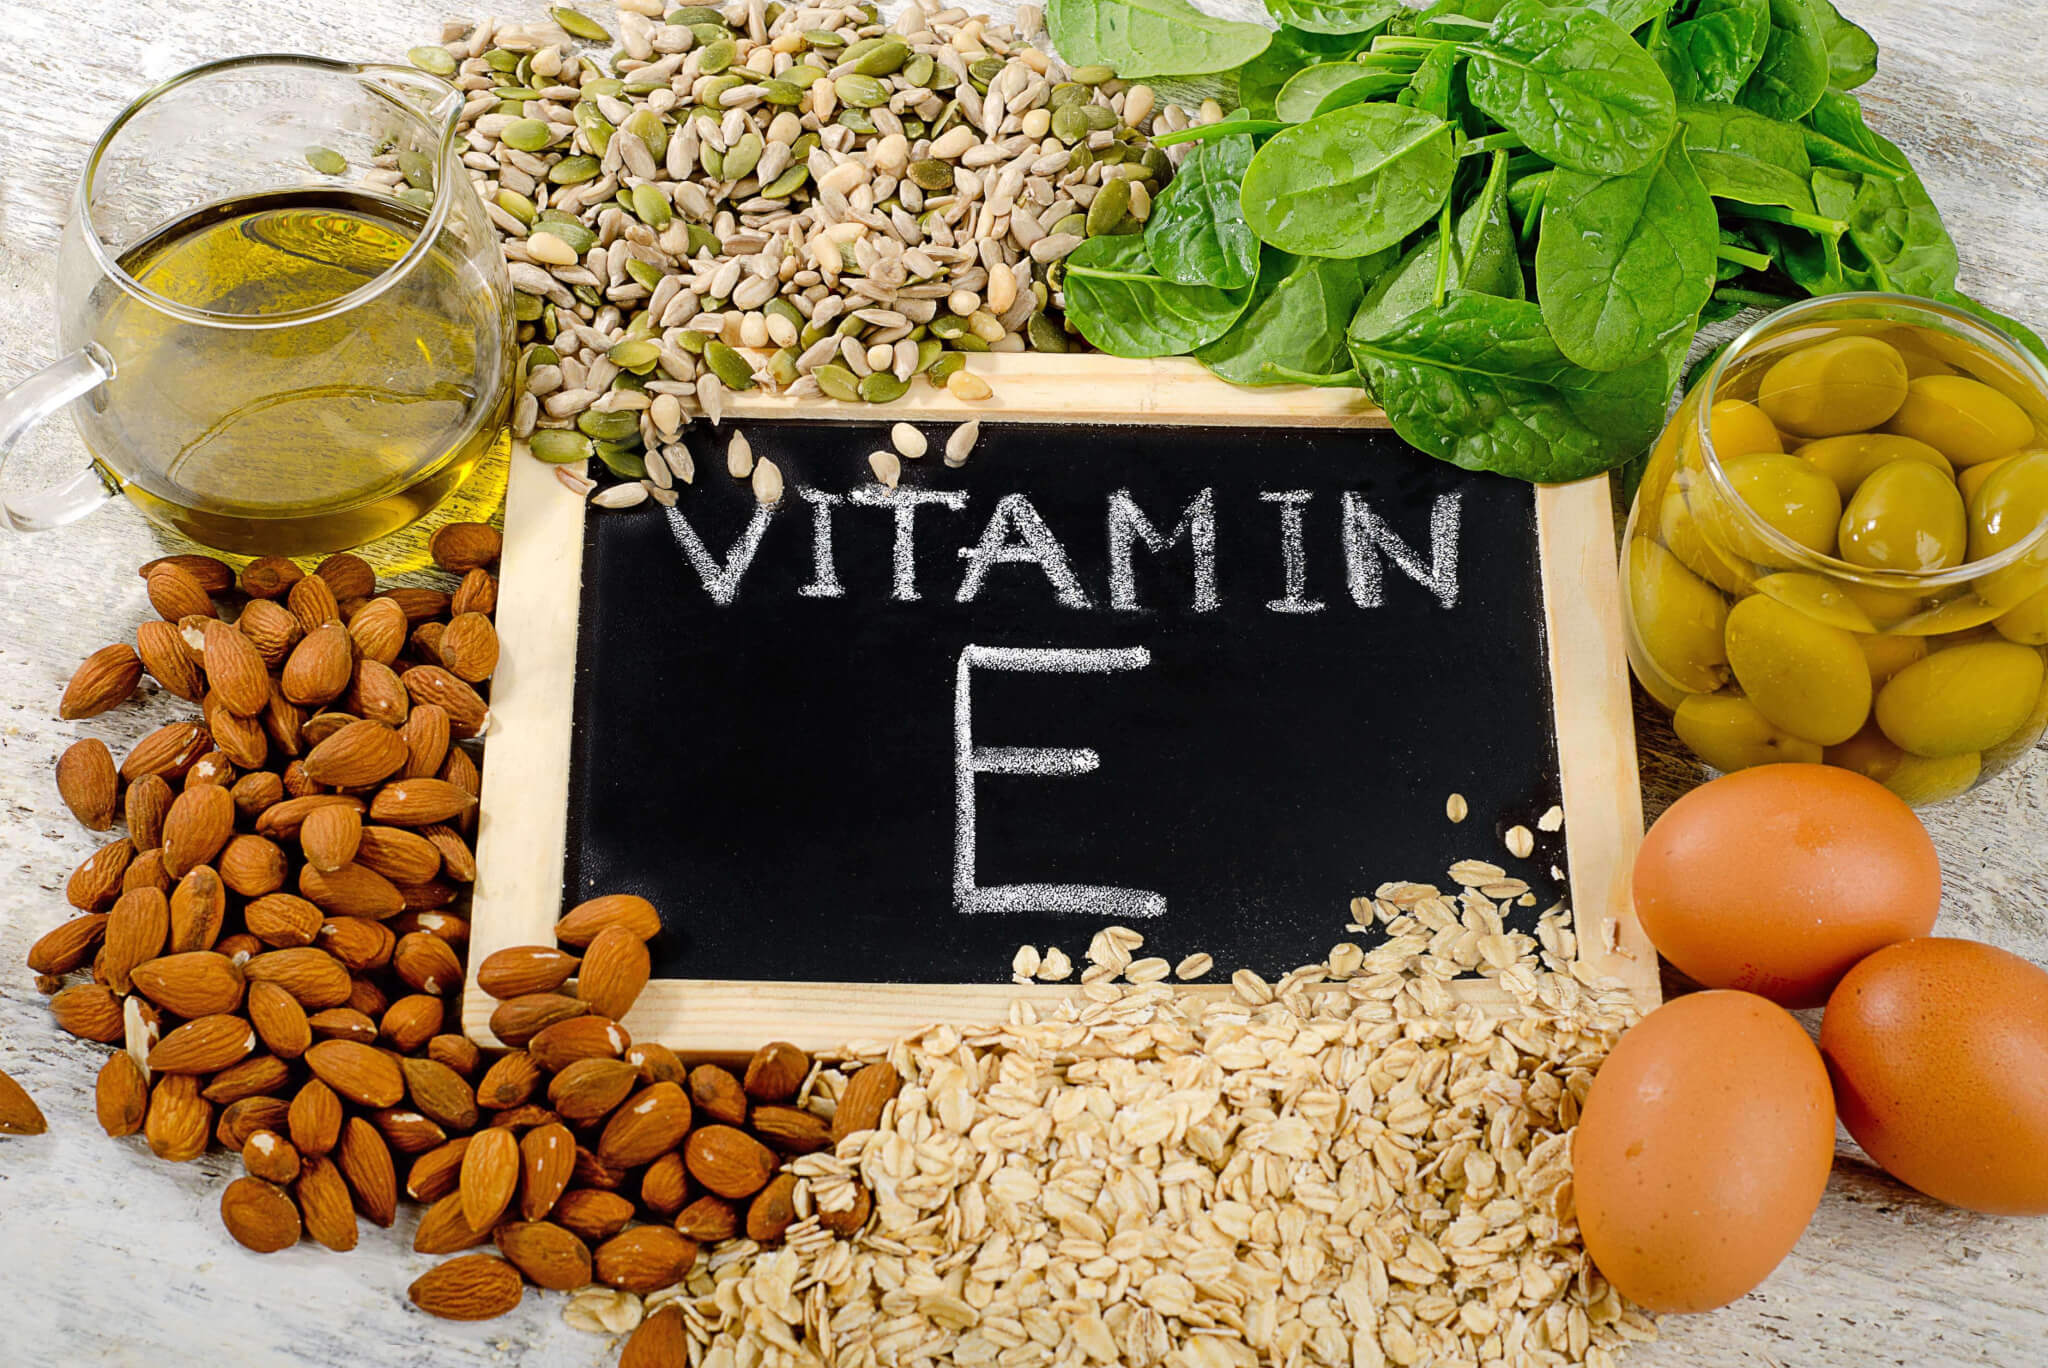 Contro l’invecchiamento della pelle vitamina E